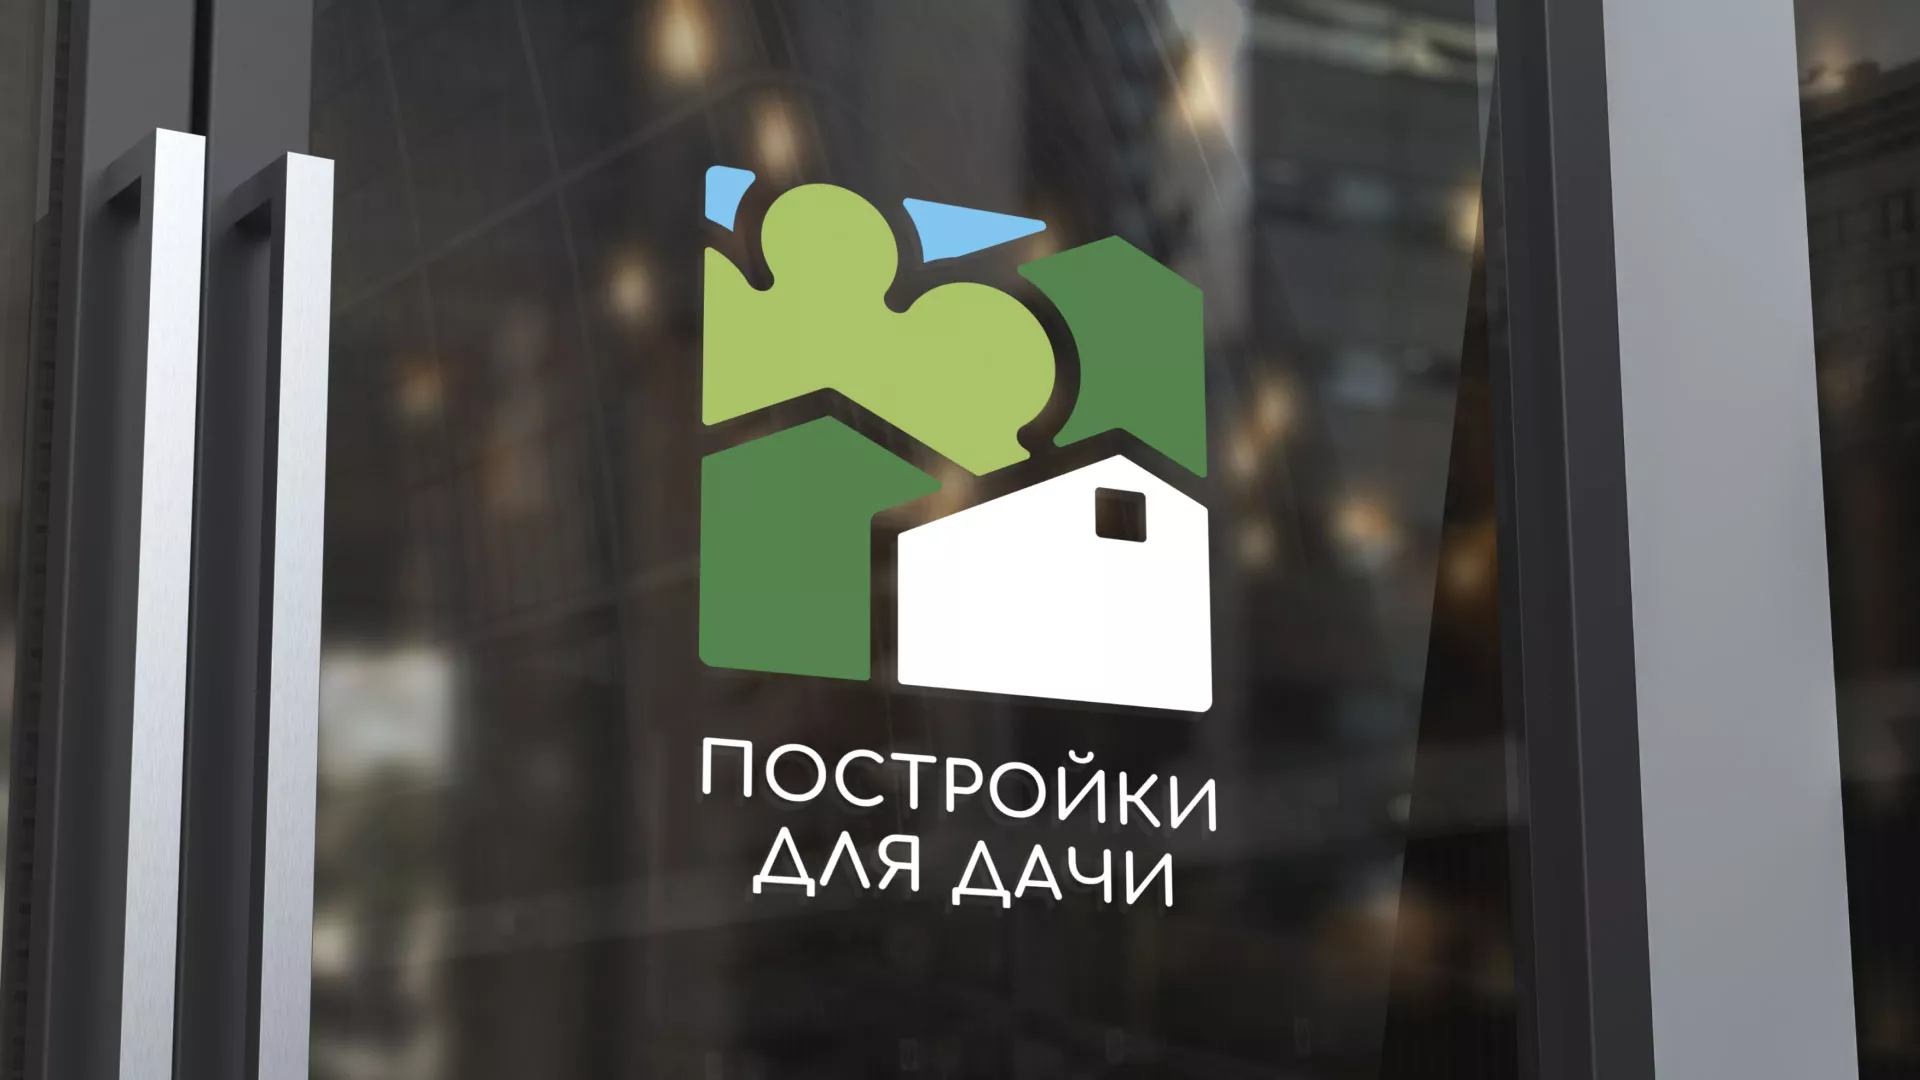 Разработка логотипа в Среднеколымске для компании «Постройки для дачи»